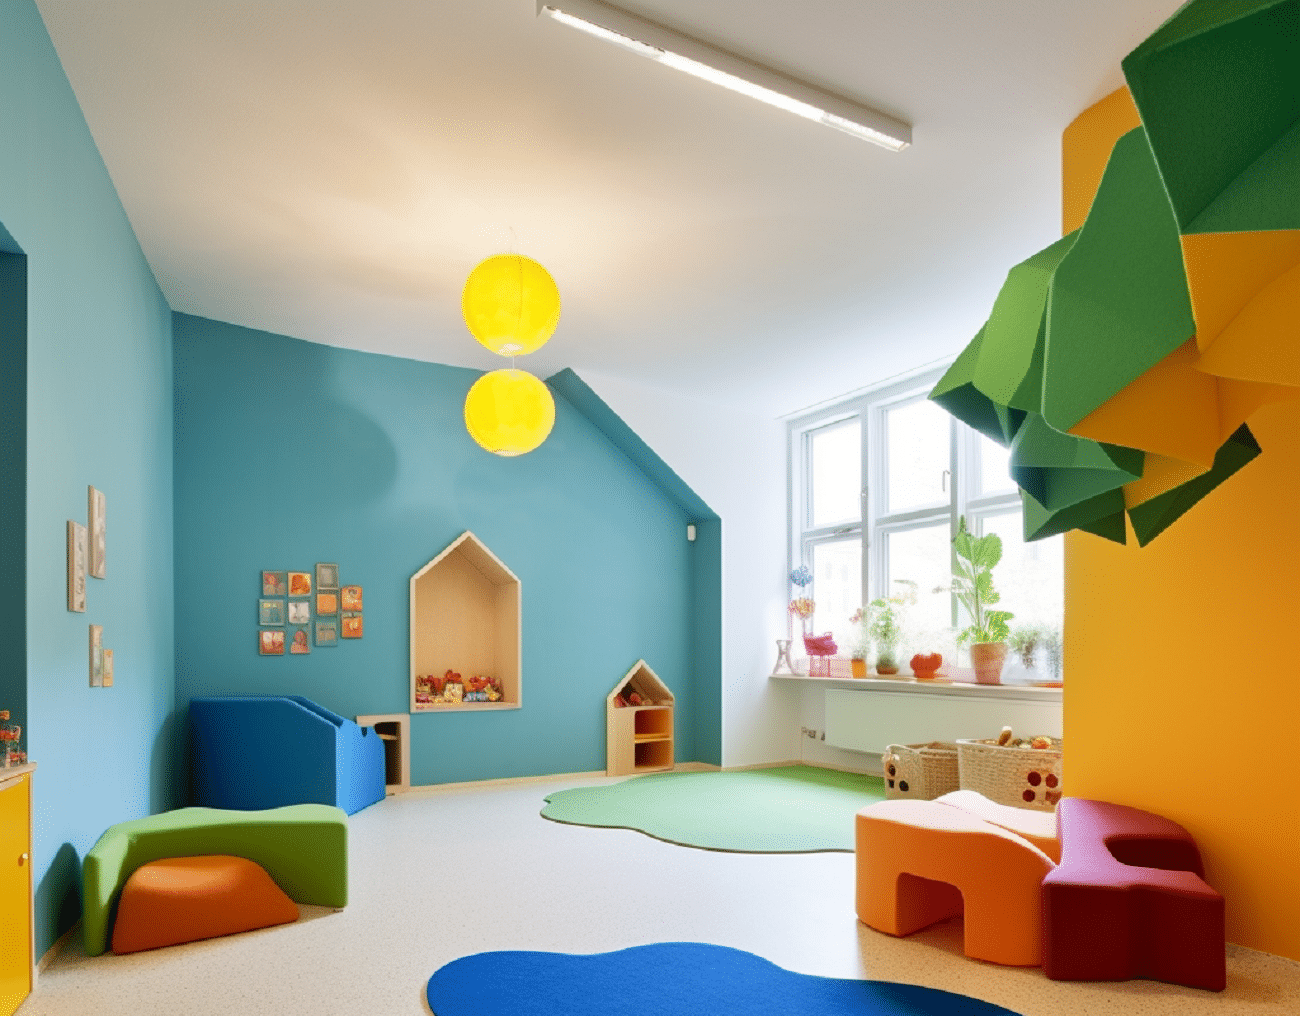 Feltres de llana natural de Textil Olius per a decoració d’espais infantils i mobiliari per a nens..